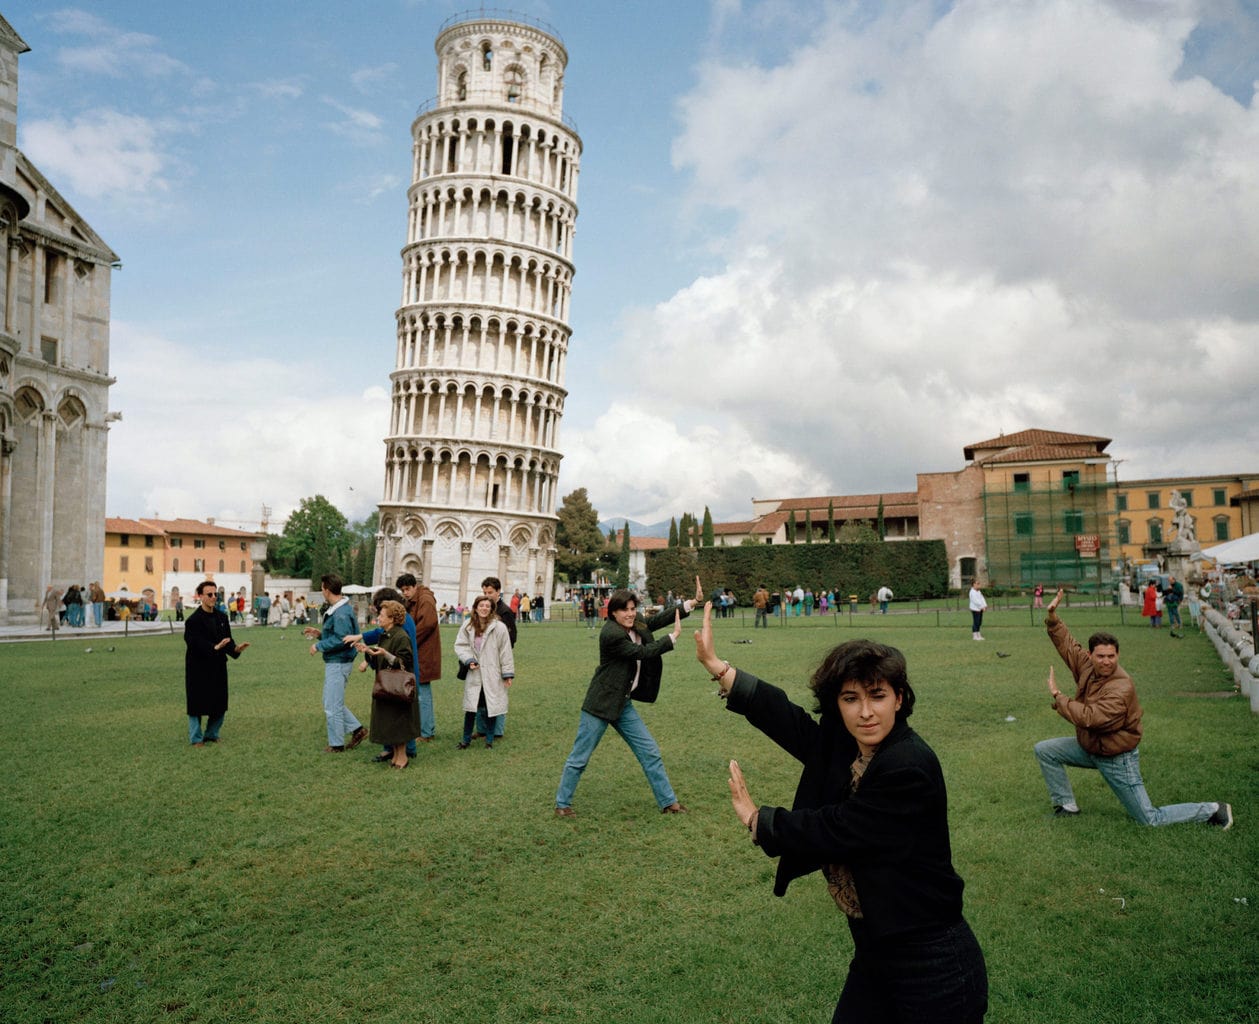 Martin Parr's foto van de scheve toren van Pisa, te zien in de Kunsthalle Emden